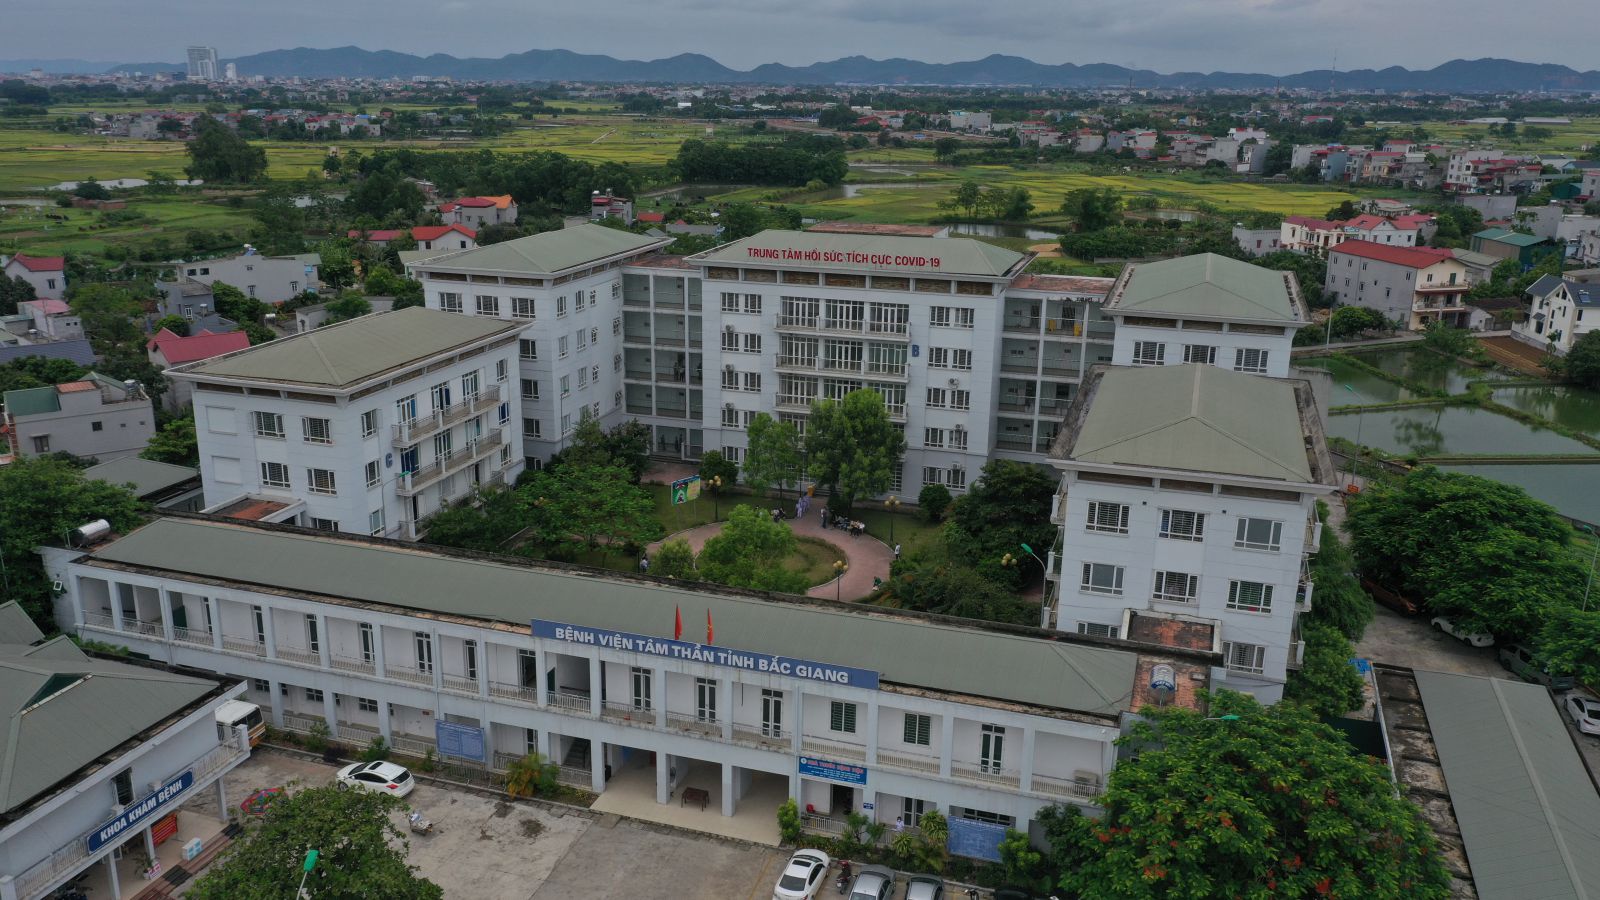 Trung tâm Hồi sức tích cực (ICU) đặt tại tòa nhà 5 tầng của Bệnh viện Tâm thần (xã Song Mai, TP Bắc Giang)